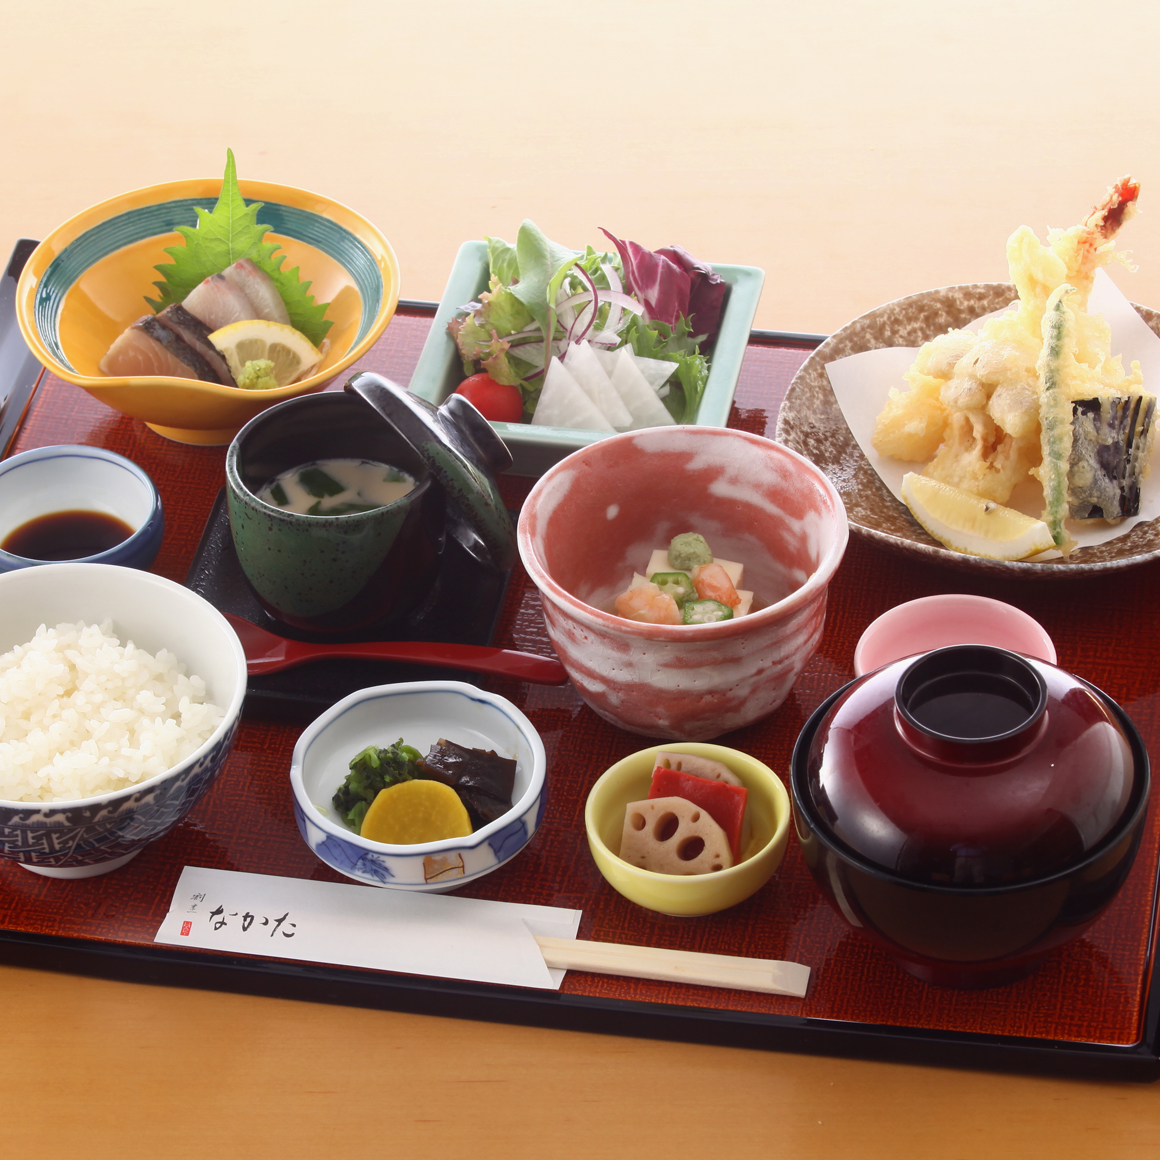 お知らせ 岡山 倉敷の和食 日本料理なら 割烹なかた Part 2